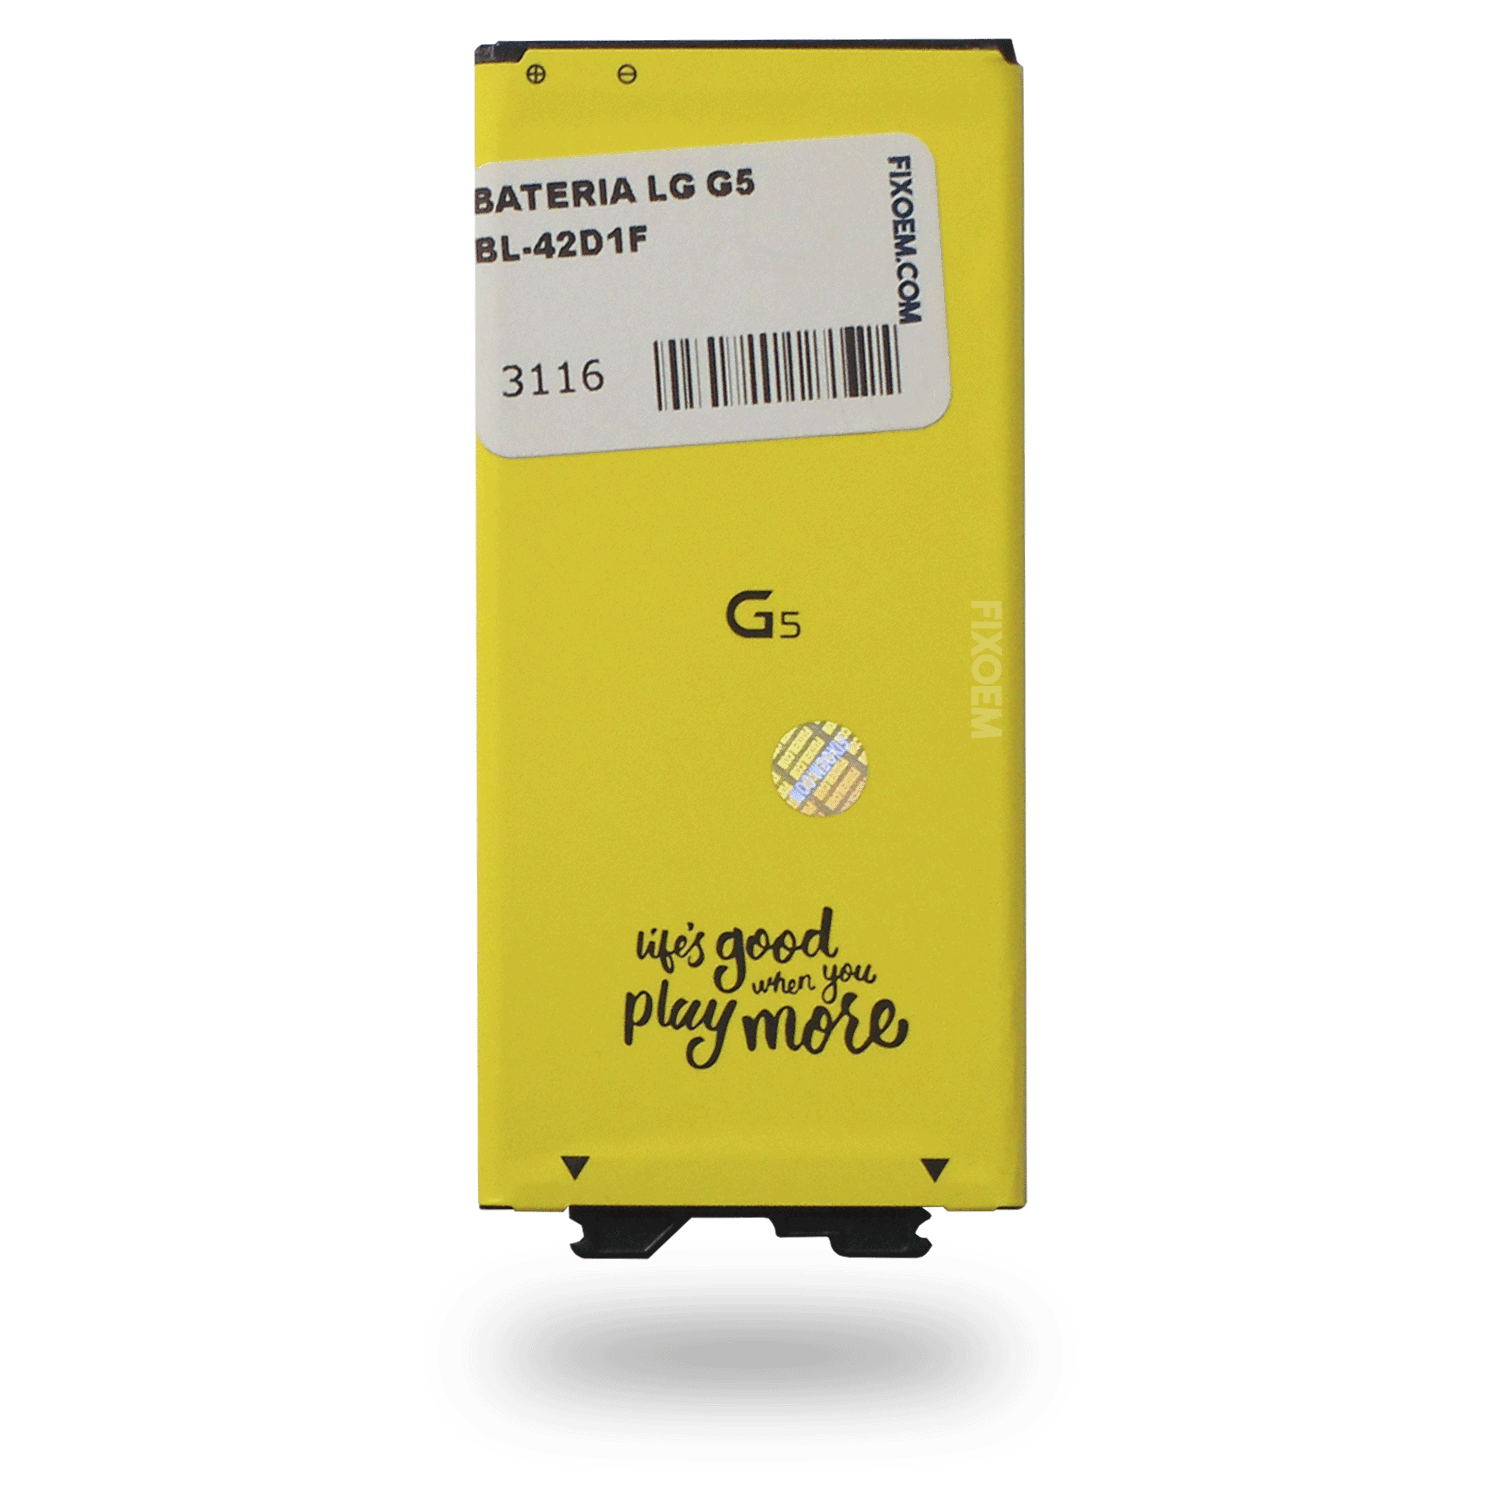 Bateria Lg G5 VS987 Bl-42D1F. a solo $ 110.00 Refaccion y puestos celulares, refurbish y microelectronica.- FixOEM